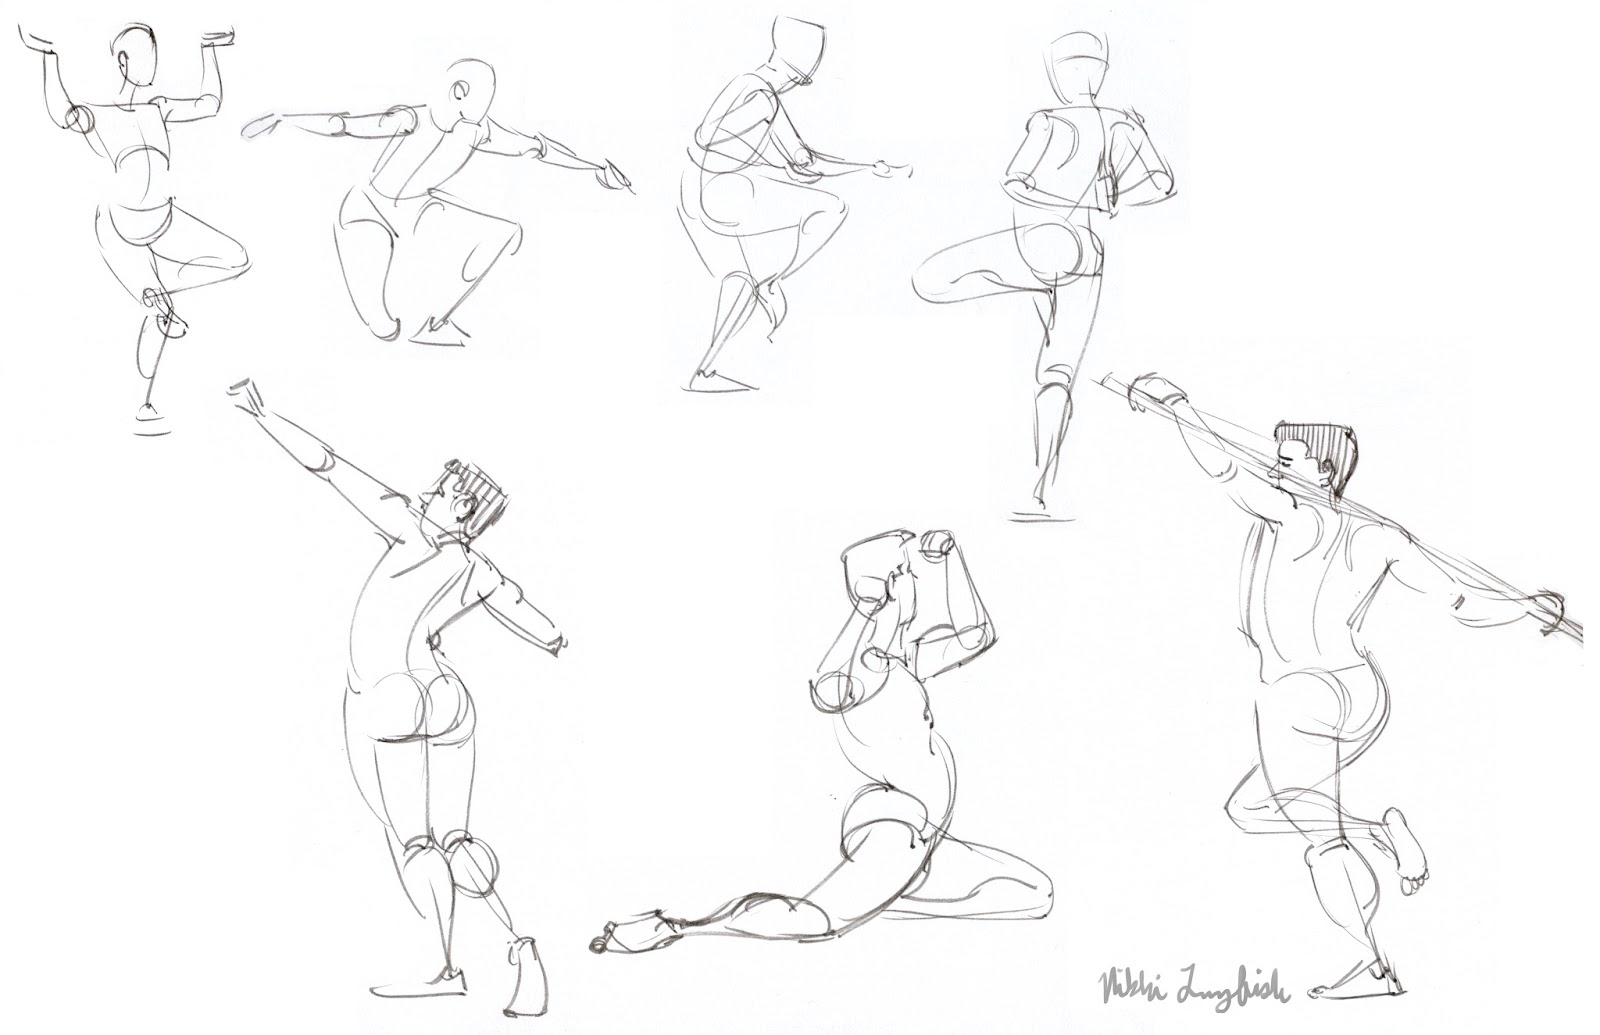 Спортсмен в движении рисунок. Человек в движении карандашом. Рисунок спортсмена в движении. Фигура человека в движении рисунок карандашом. Рисунок спортсмена в движении карандашом.